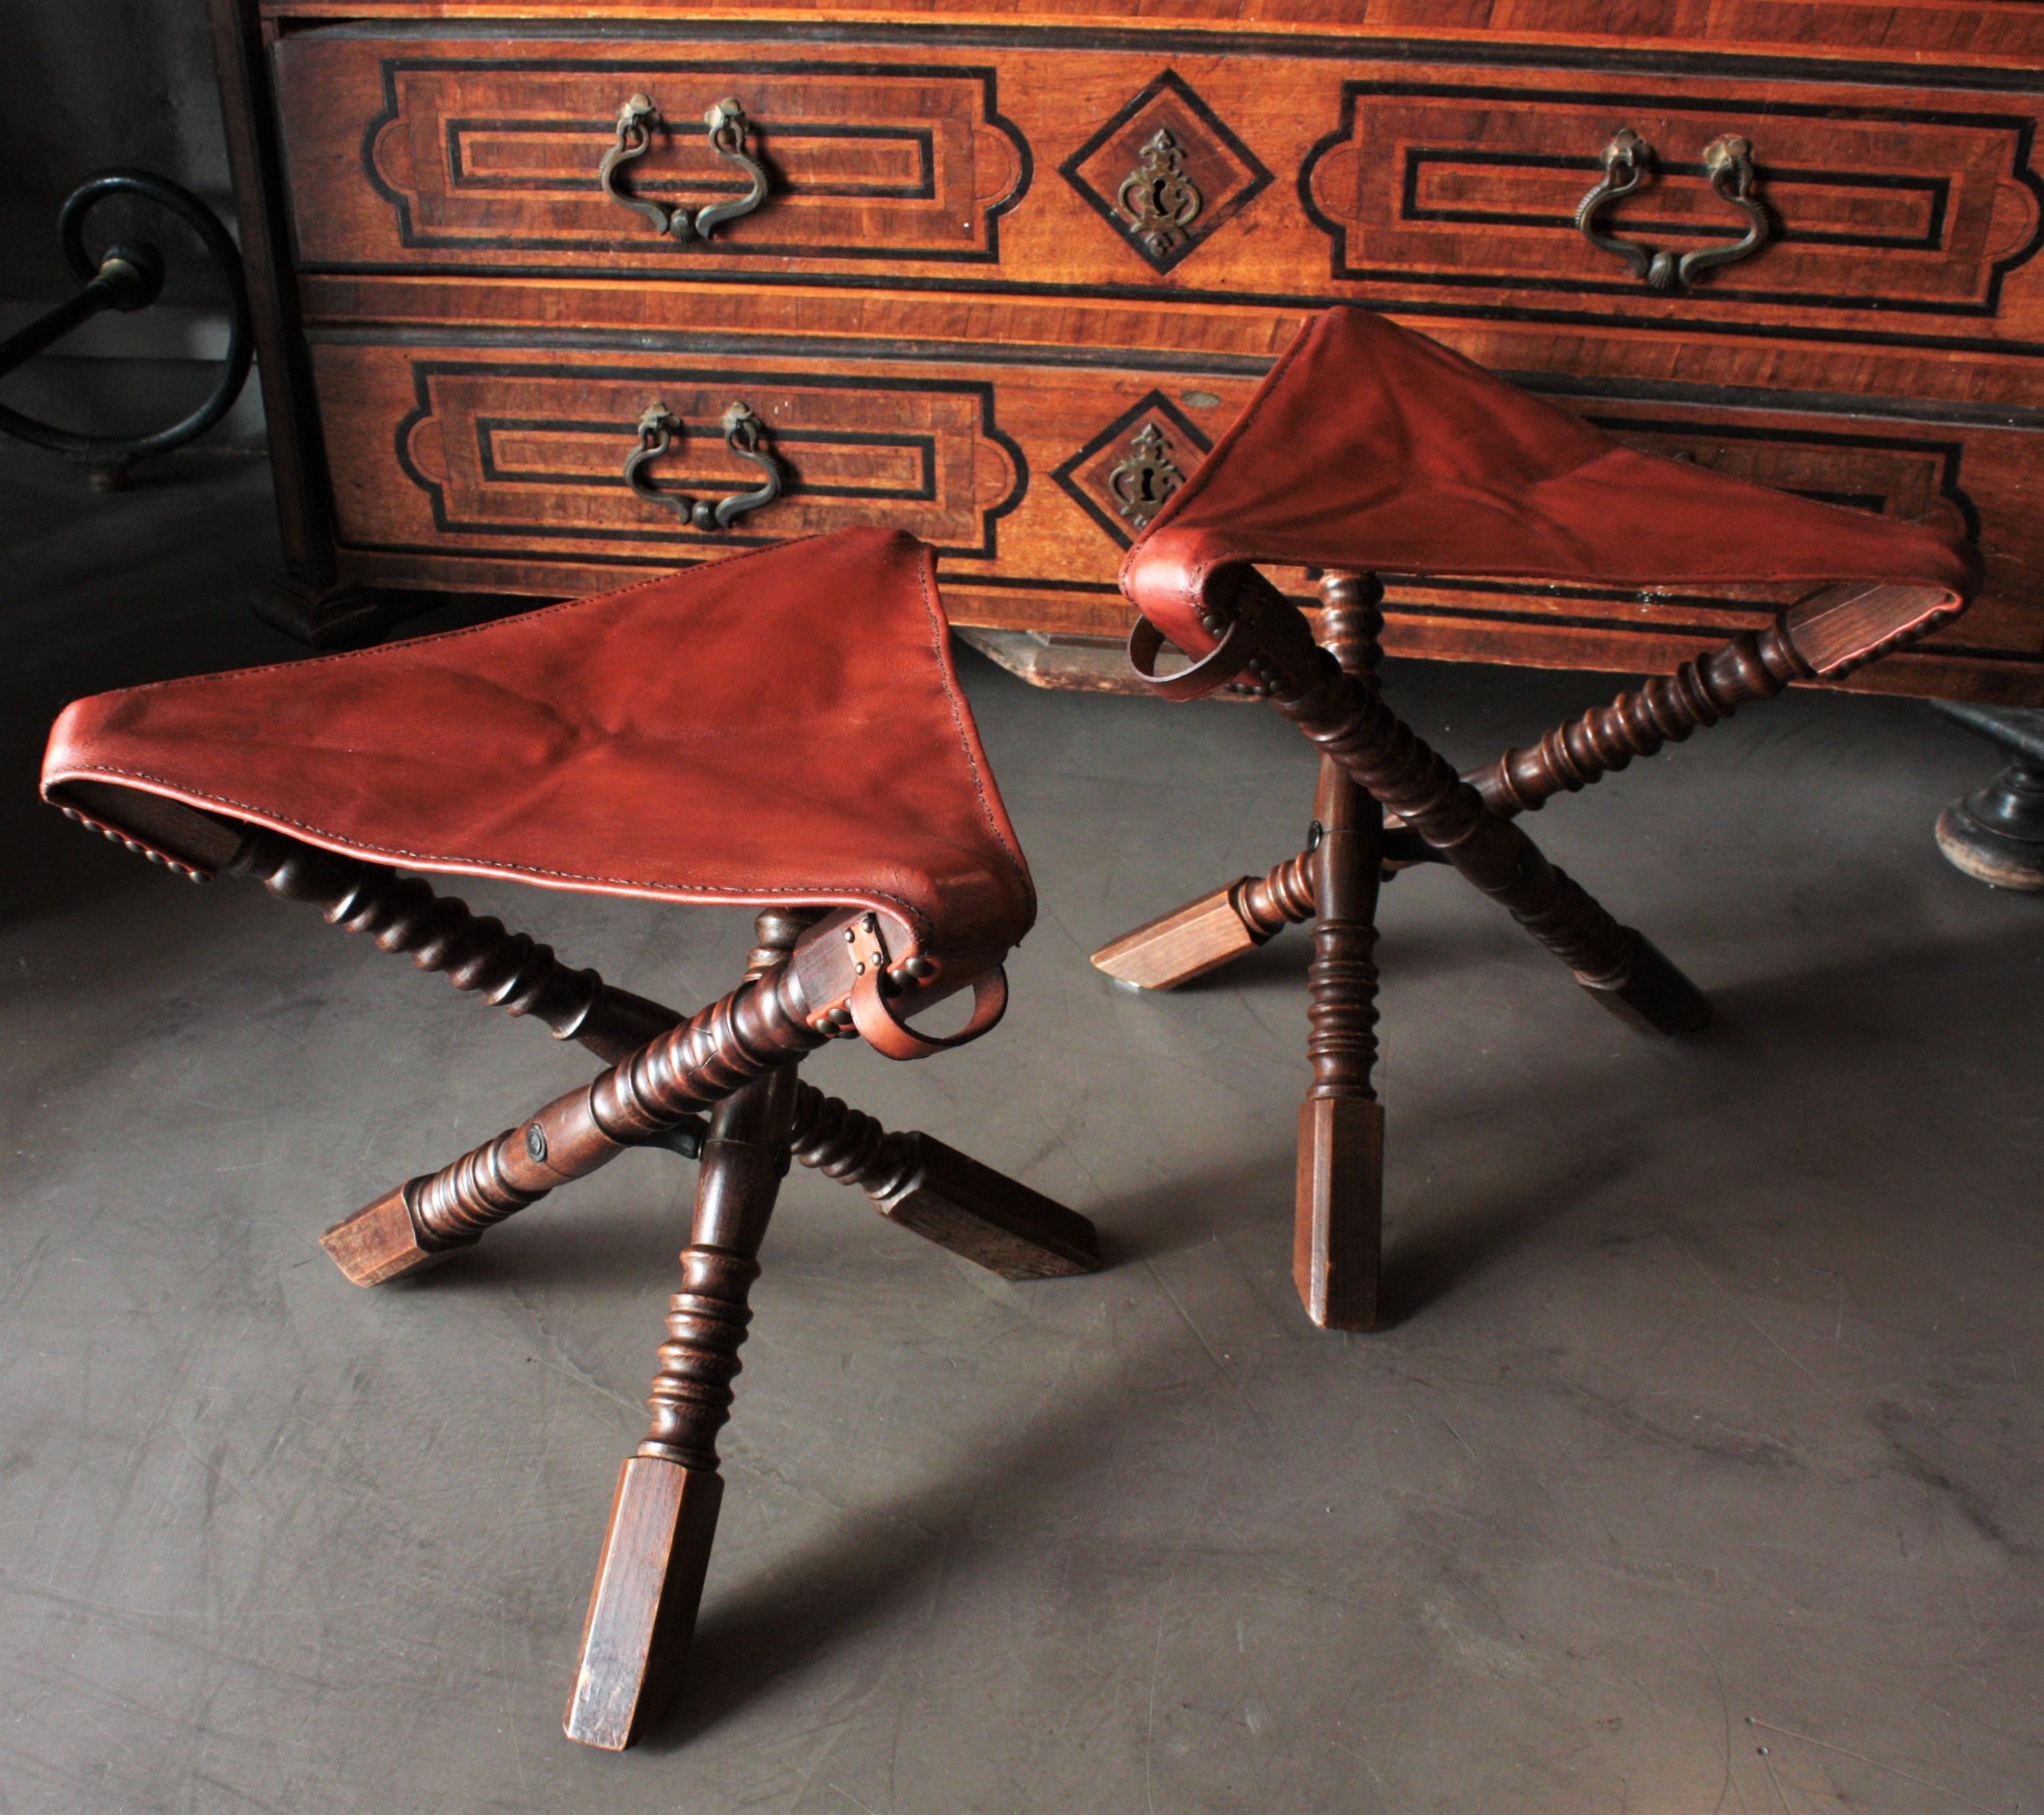 Elegante paire de tabourets tripodes Campaigner en chêne tourné avec sièges pliants en cuir. Angleterre, années 1930.
Ces tabourets pliants sont dotés d'une structure tripode en bois de chêne tourné et pliable. Ils sont dotés d'un siège en cuir en